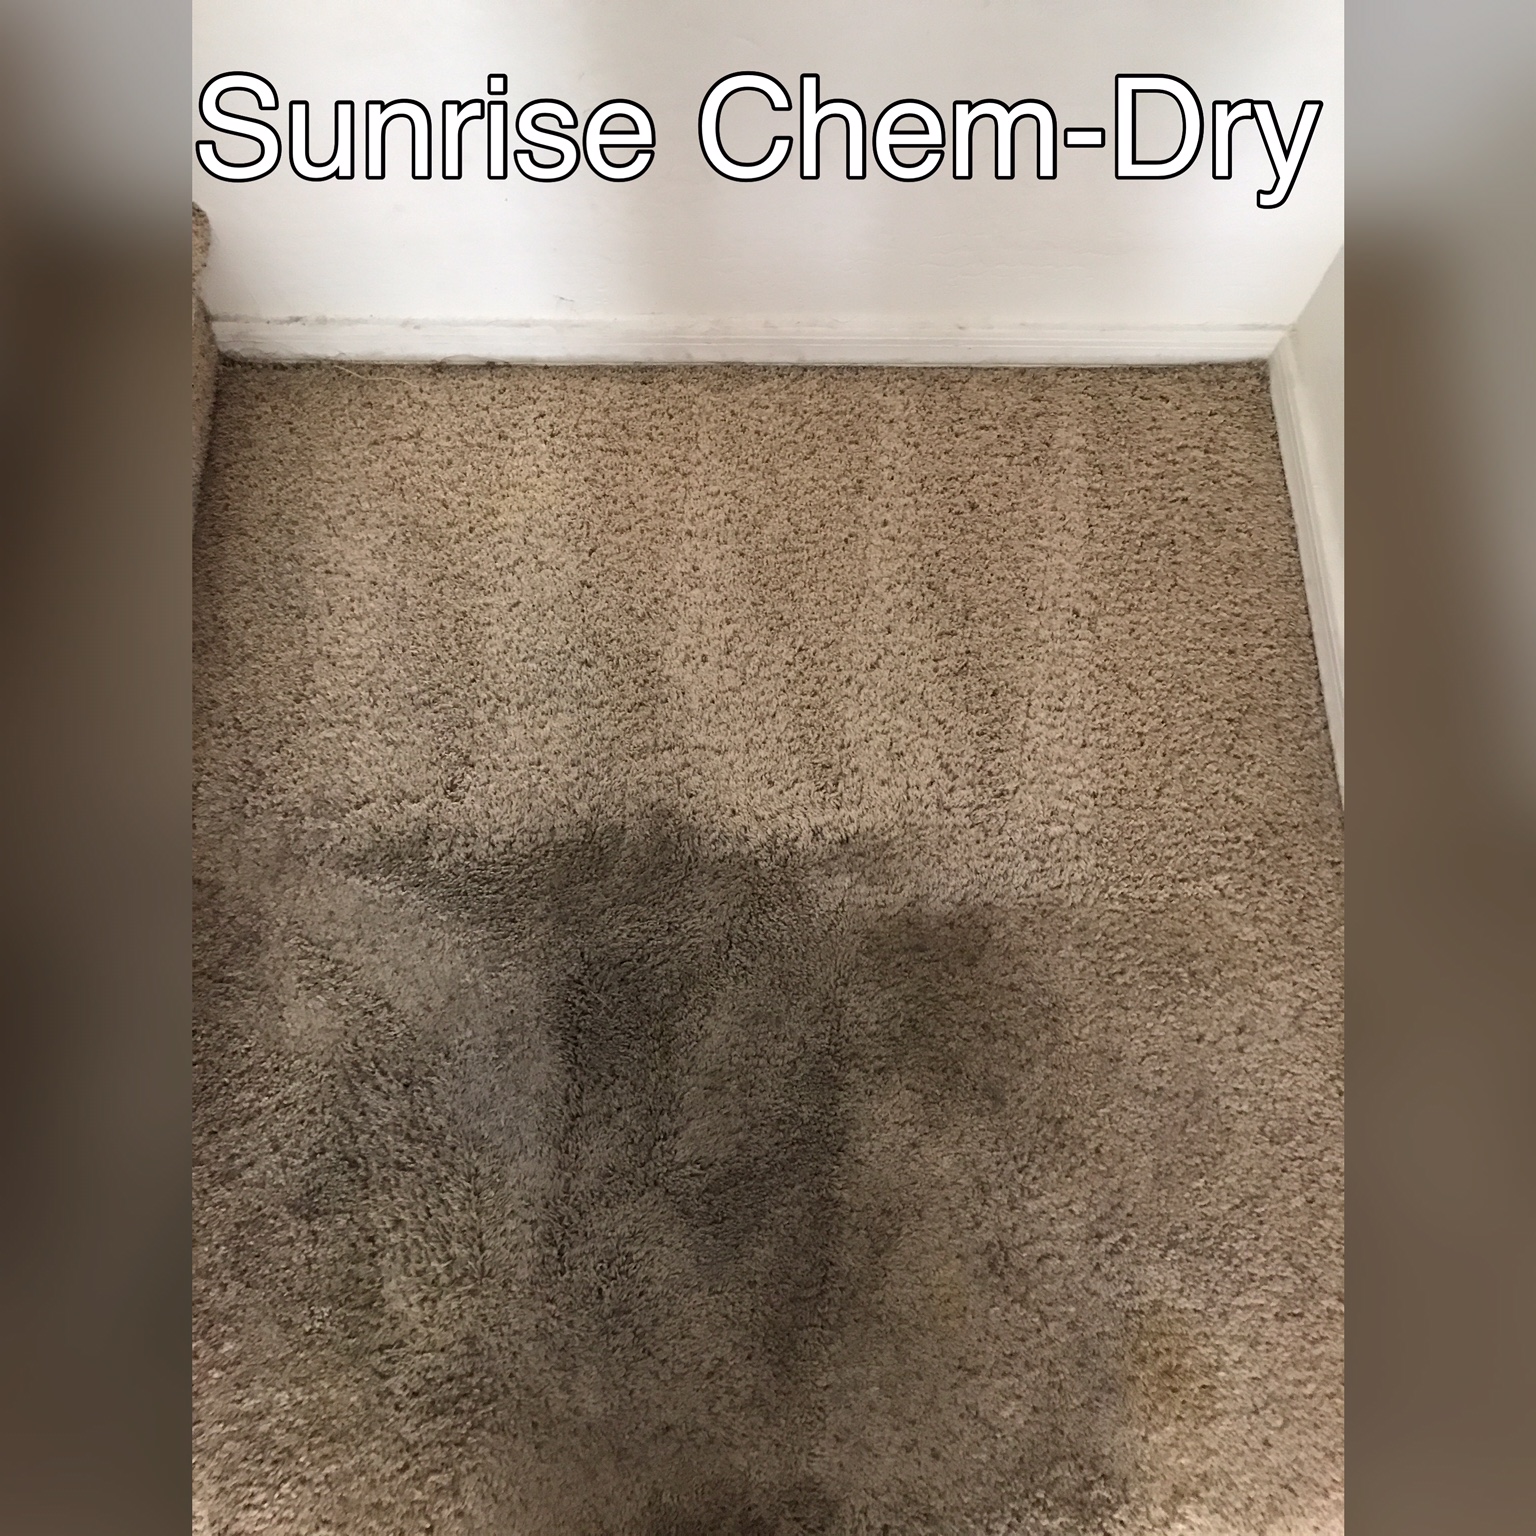 Sunrise Chem-Dry Photo